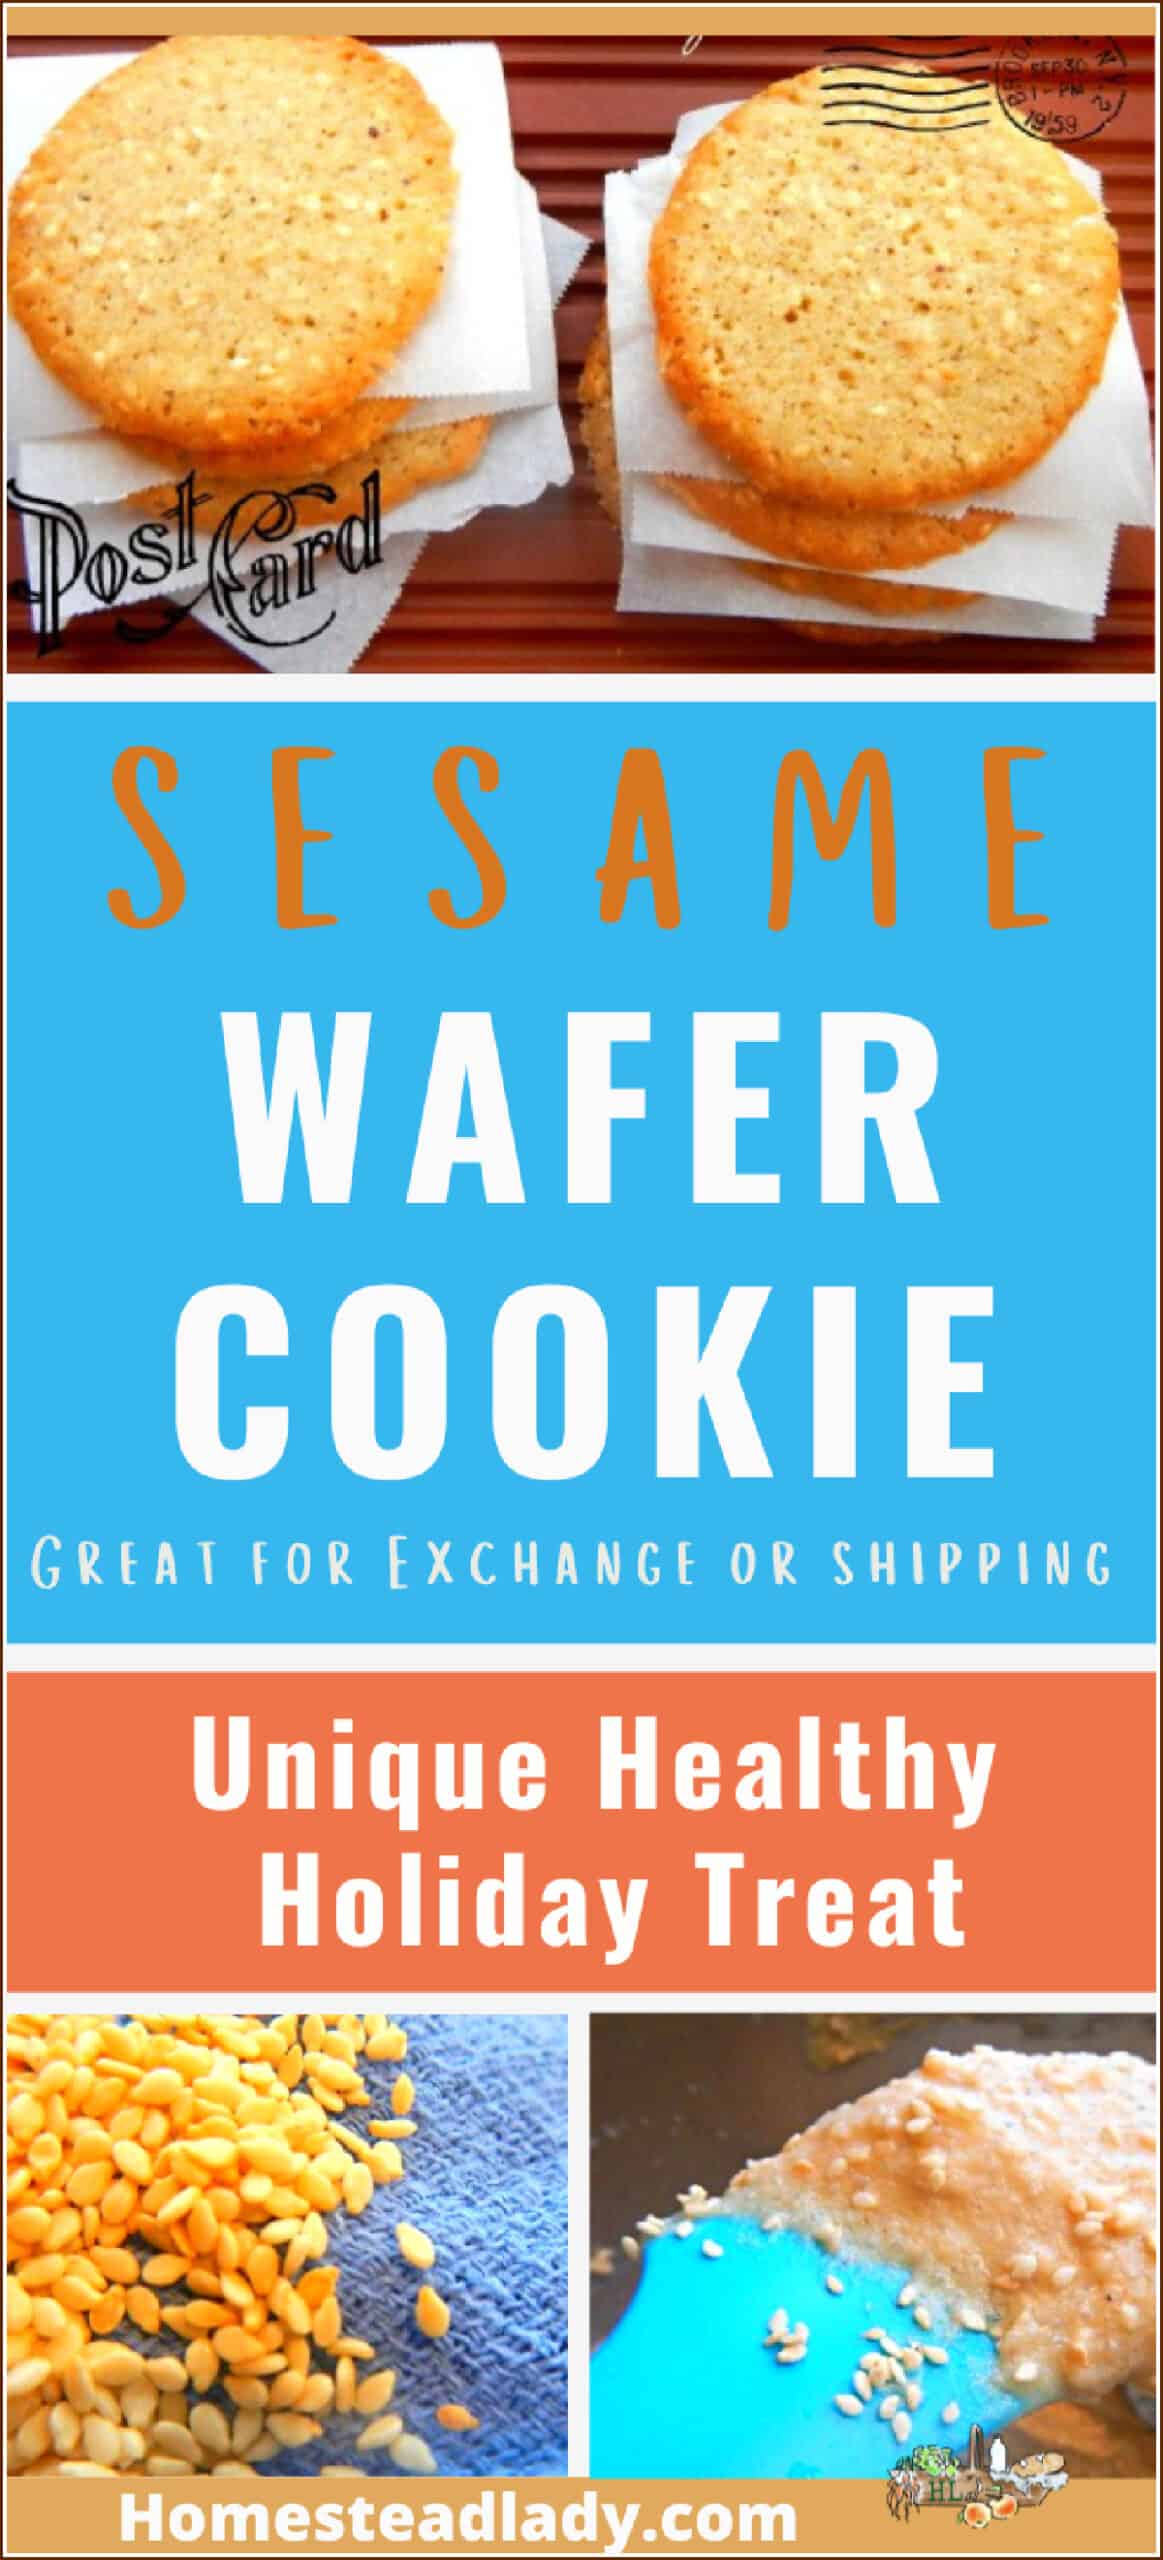 Benne wafer cookies, benne cookie batter, sesame seeds